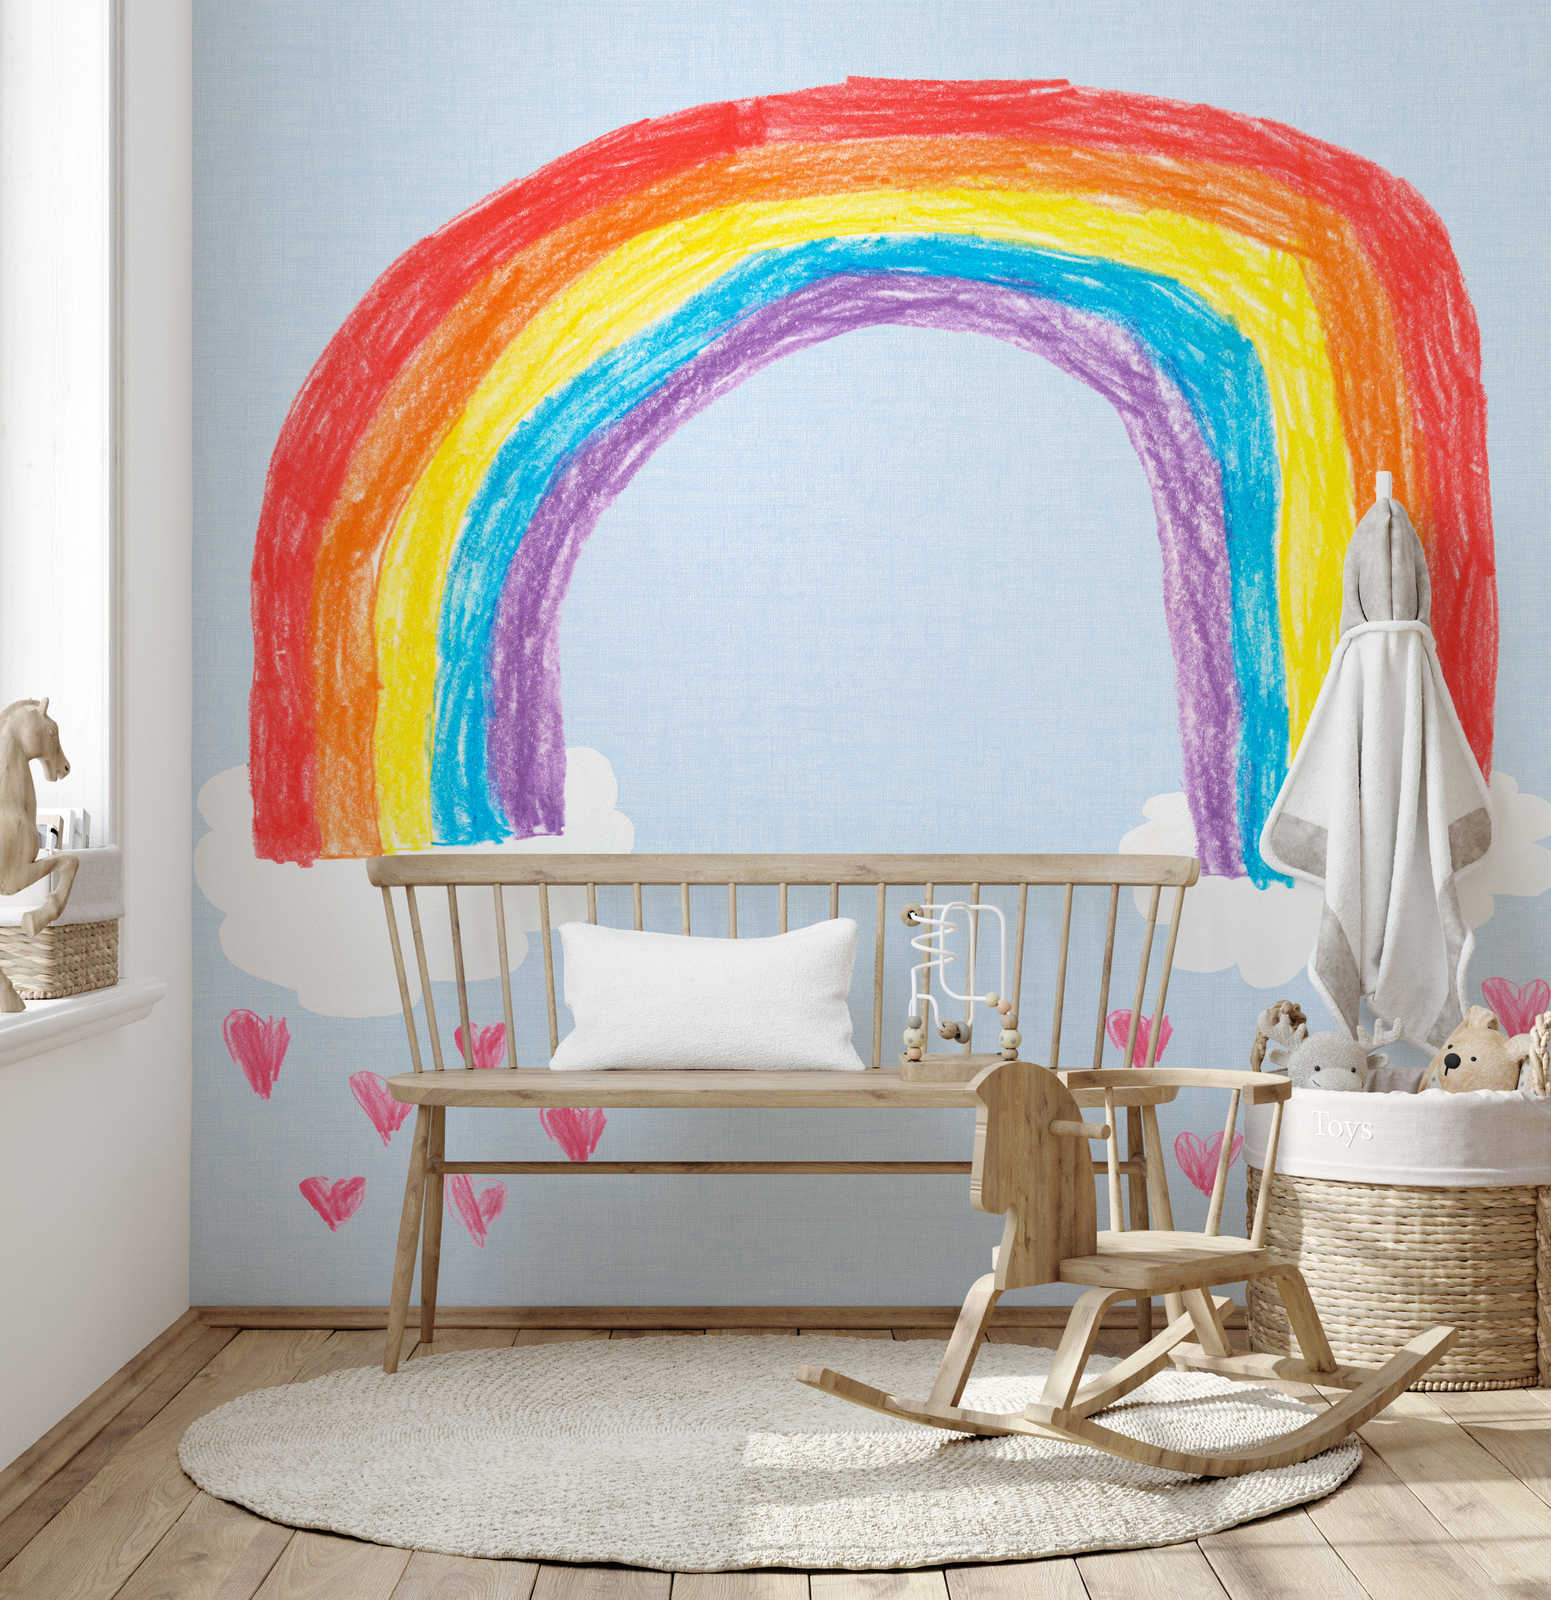         Fototapete selbstgemalter Regenbogen für Kinderzimmer
    